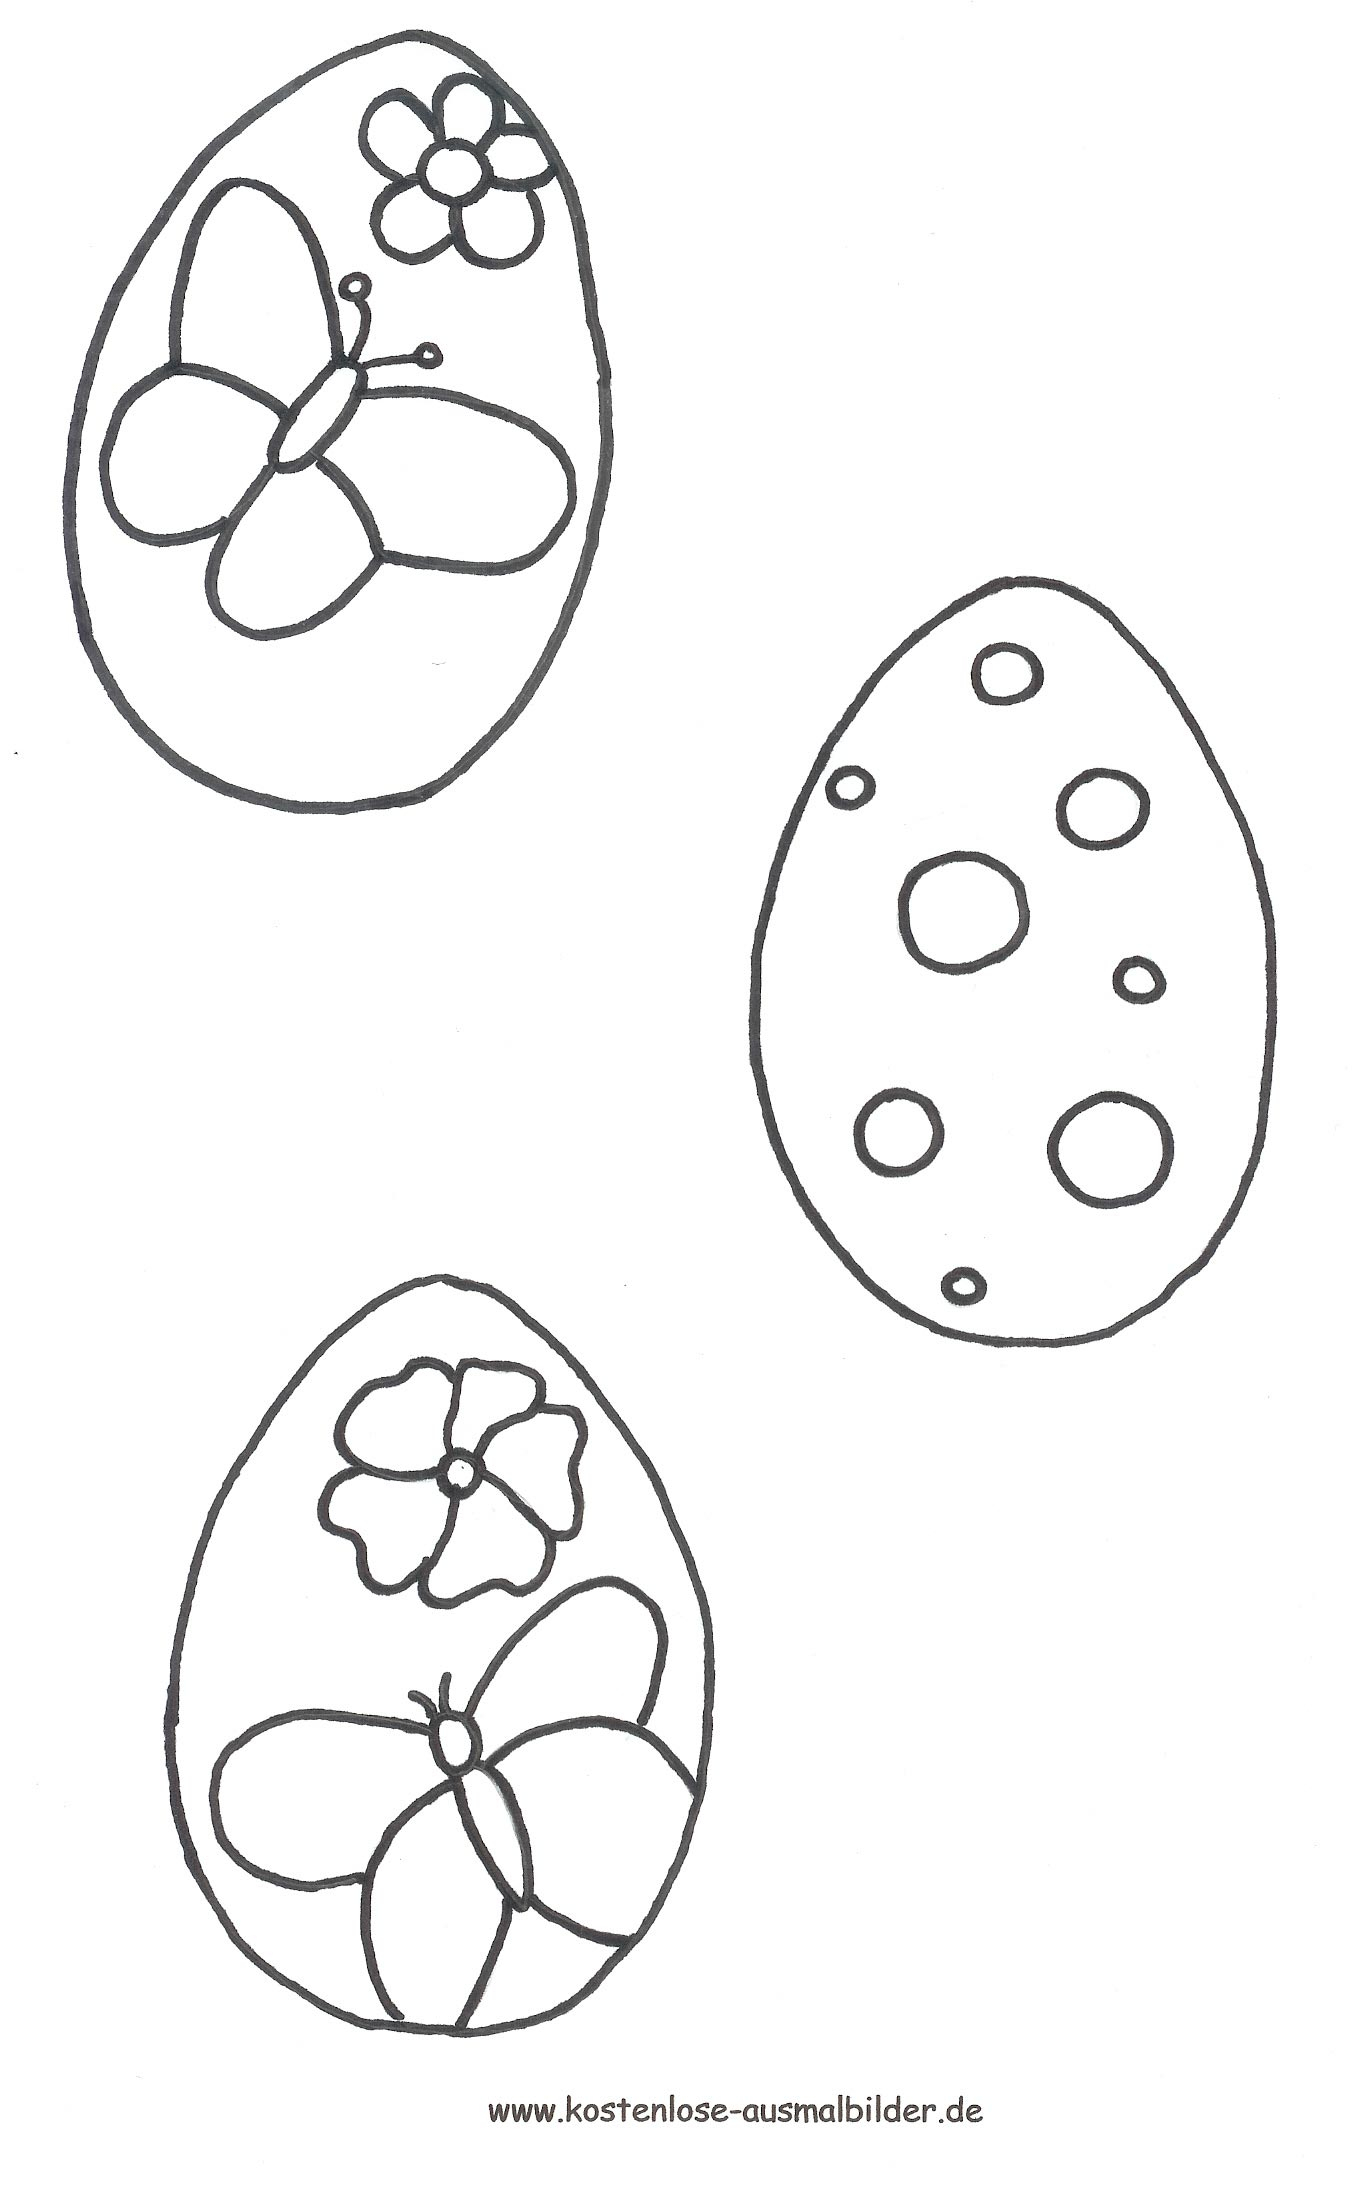 Malvorlagen - Ausmalbilder Kleine Ostereier | Ostern mit Malvorlagen Ostereier